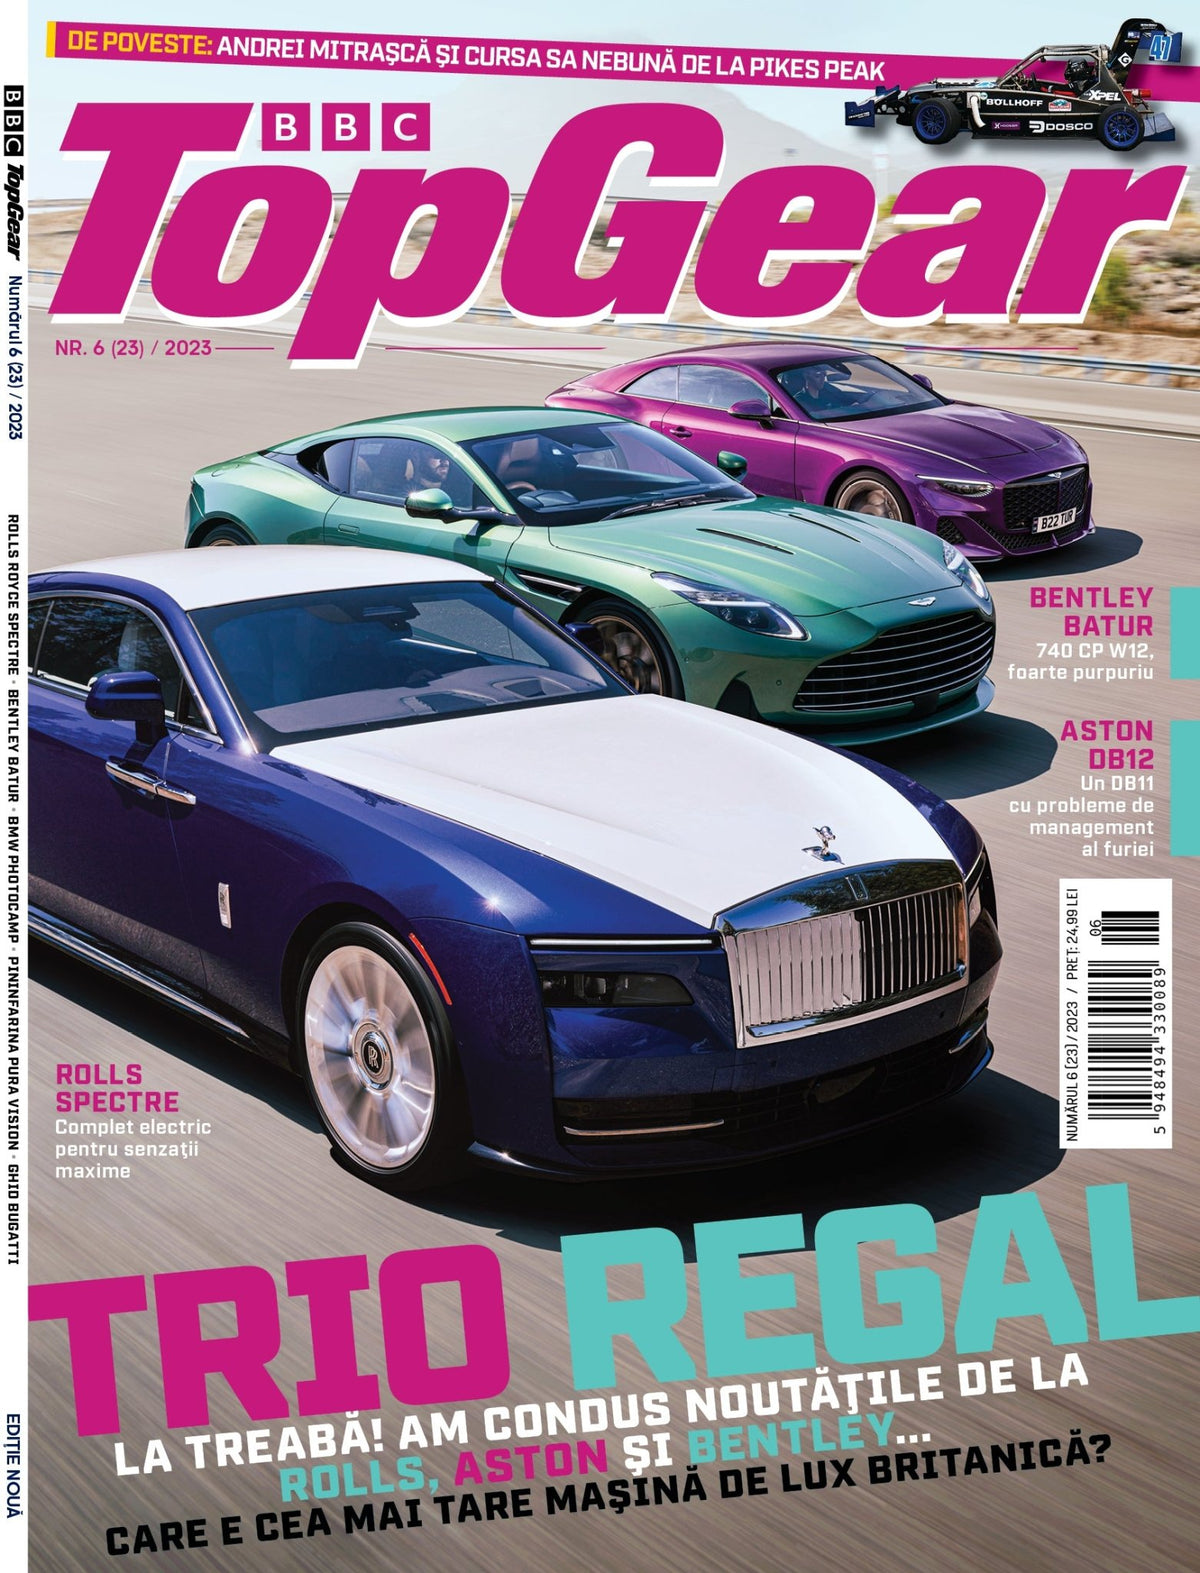 BBC Top Gear numarul 6/ 2023 - Publisol.ro